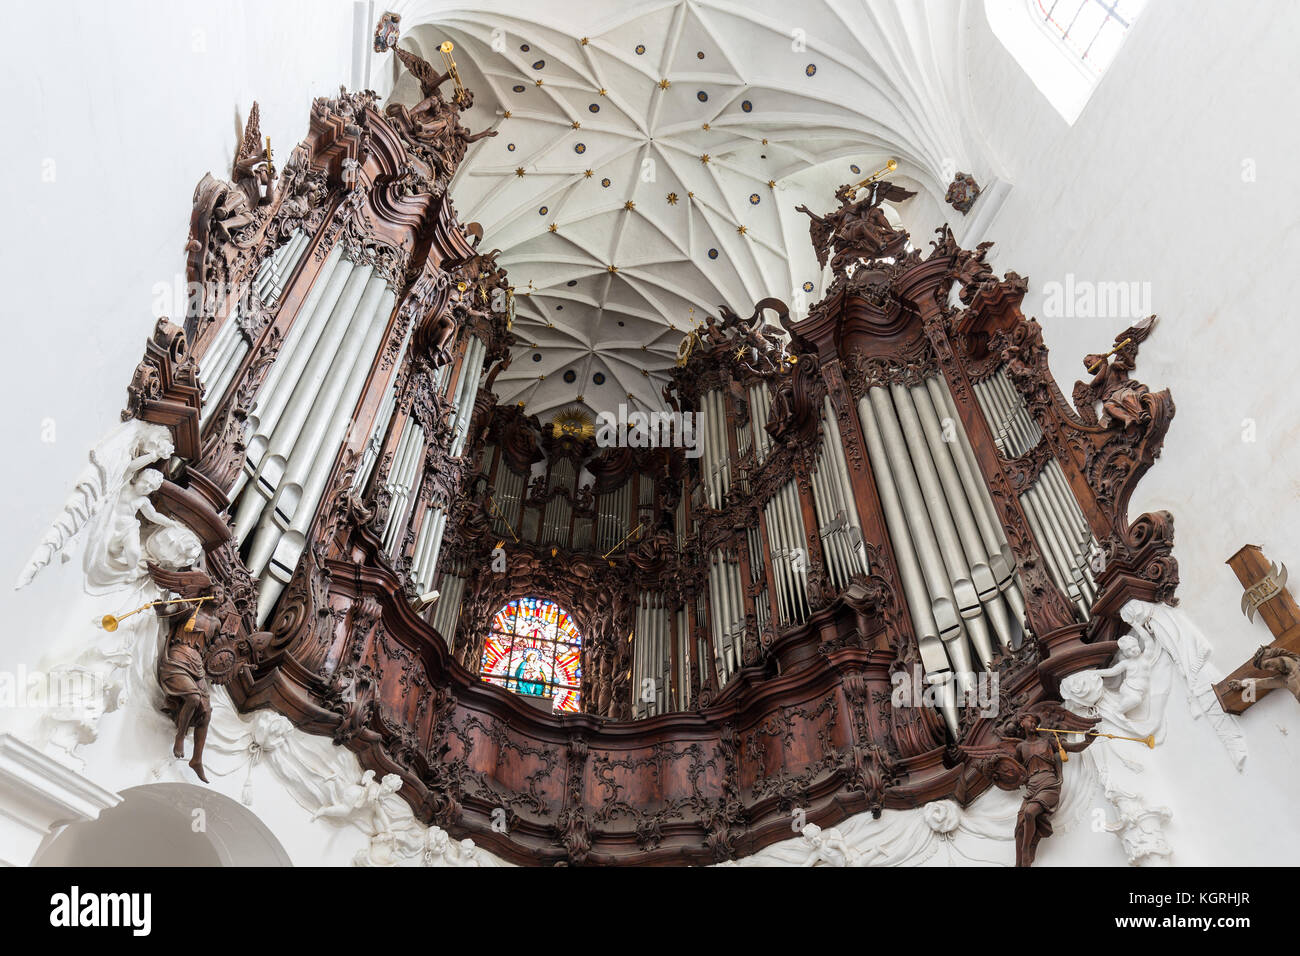 Große Orgel an der oliwa Oliwa archcathedral in Danzig, Polen, gesehen von unten. Stockfoto